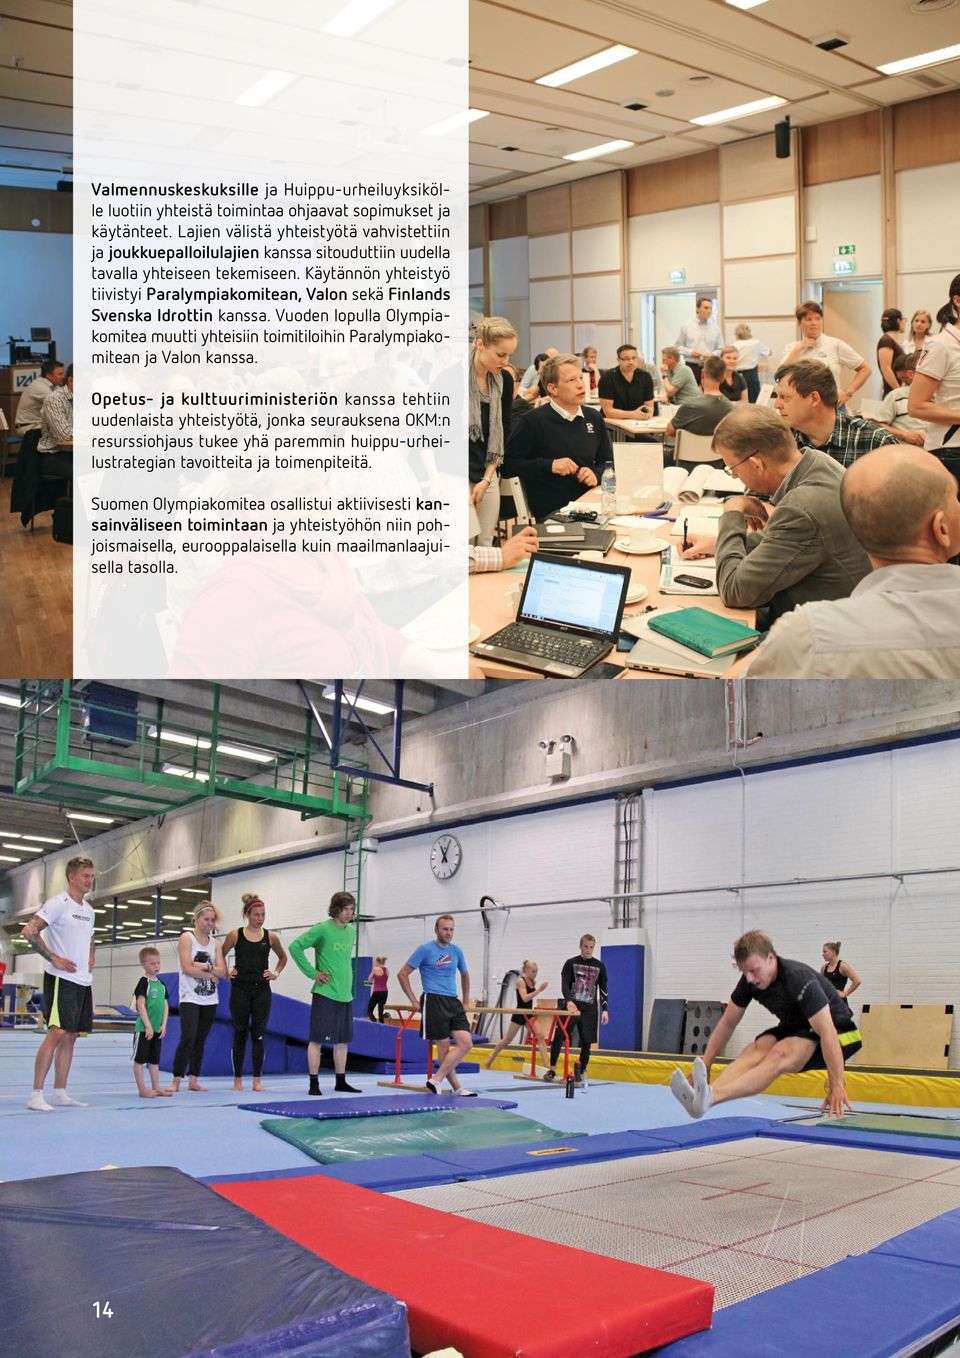 Käytännön yhteistyö tiivistyi Paralympiakomitean, Valon sekä Finlands Svenska Idrottin kanssa. Vuoden lopulla Olympiakomitea muutti yhteisiin toimitiloihin Paralympiakomitean ja Valon kanssa.